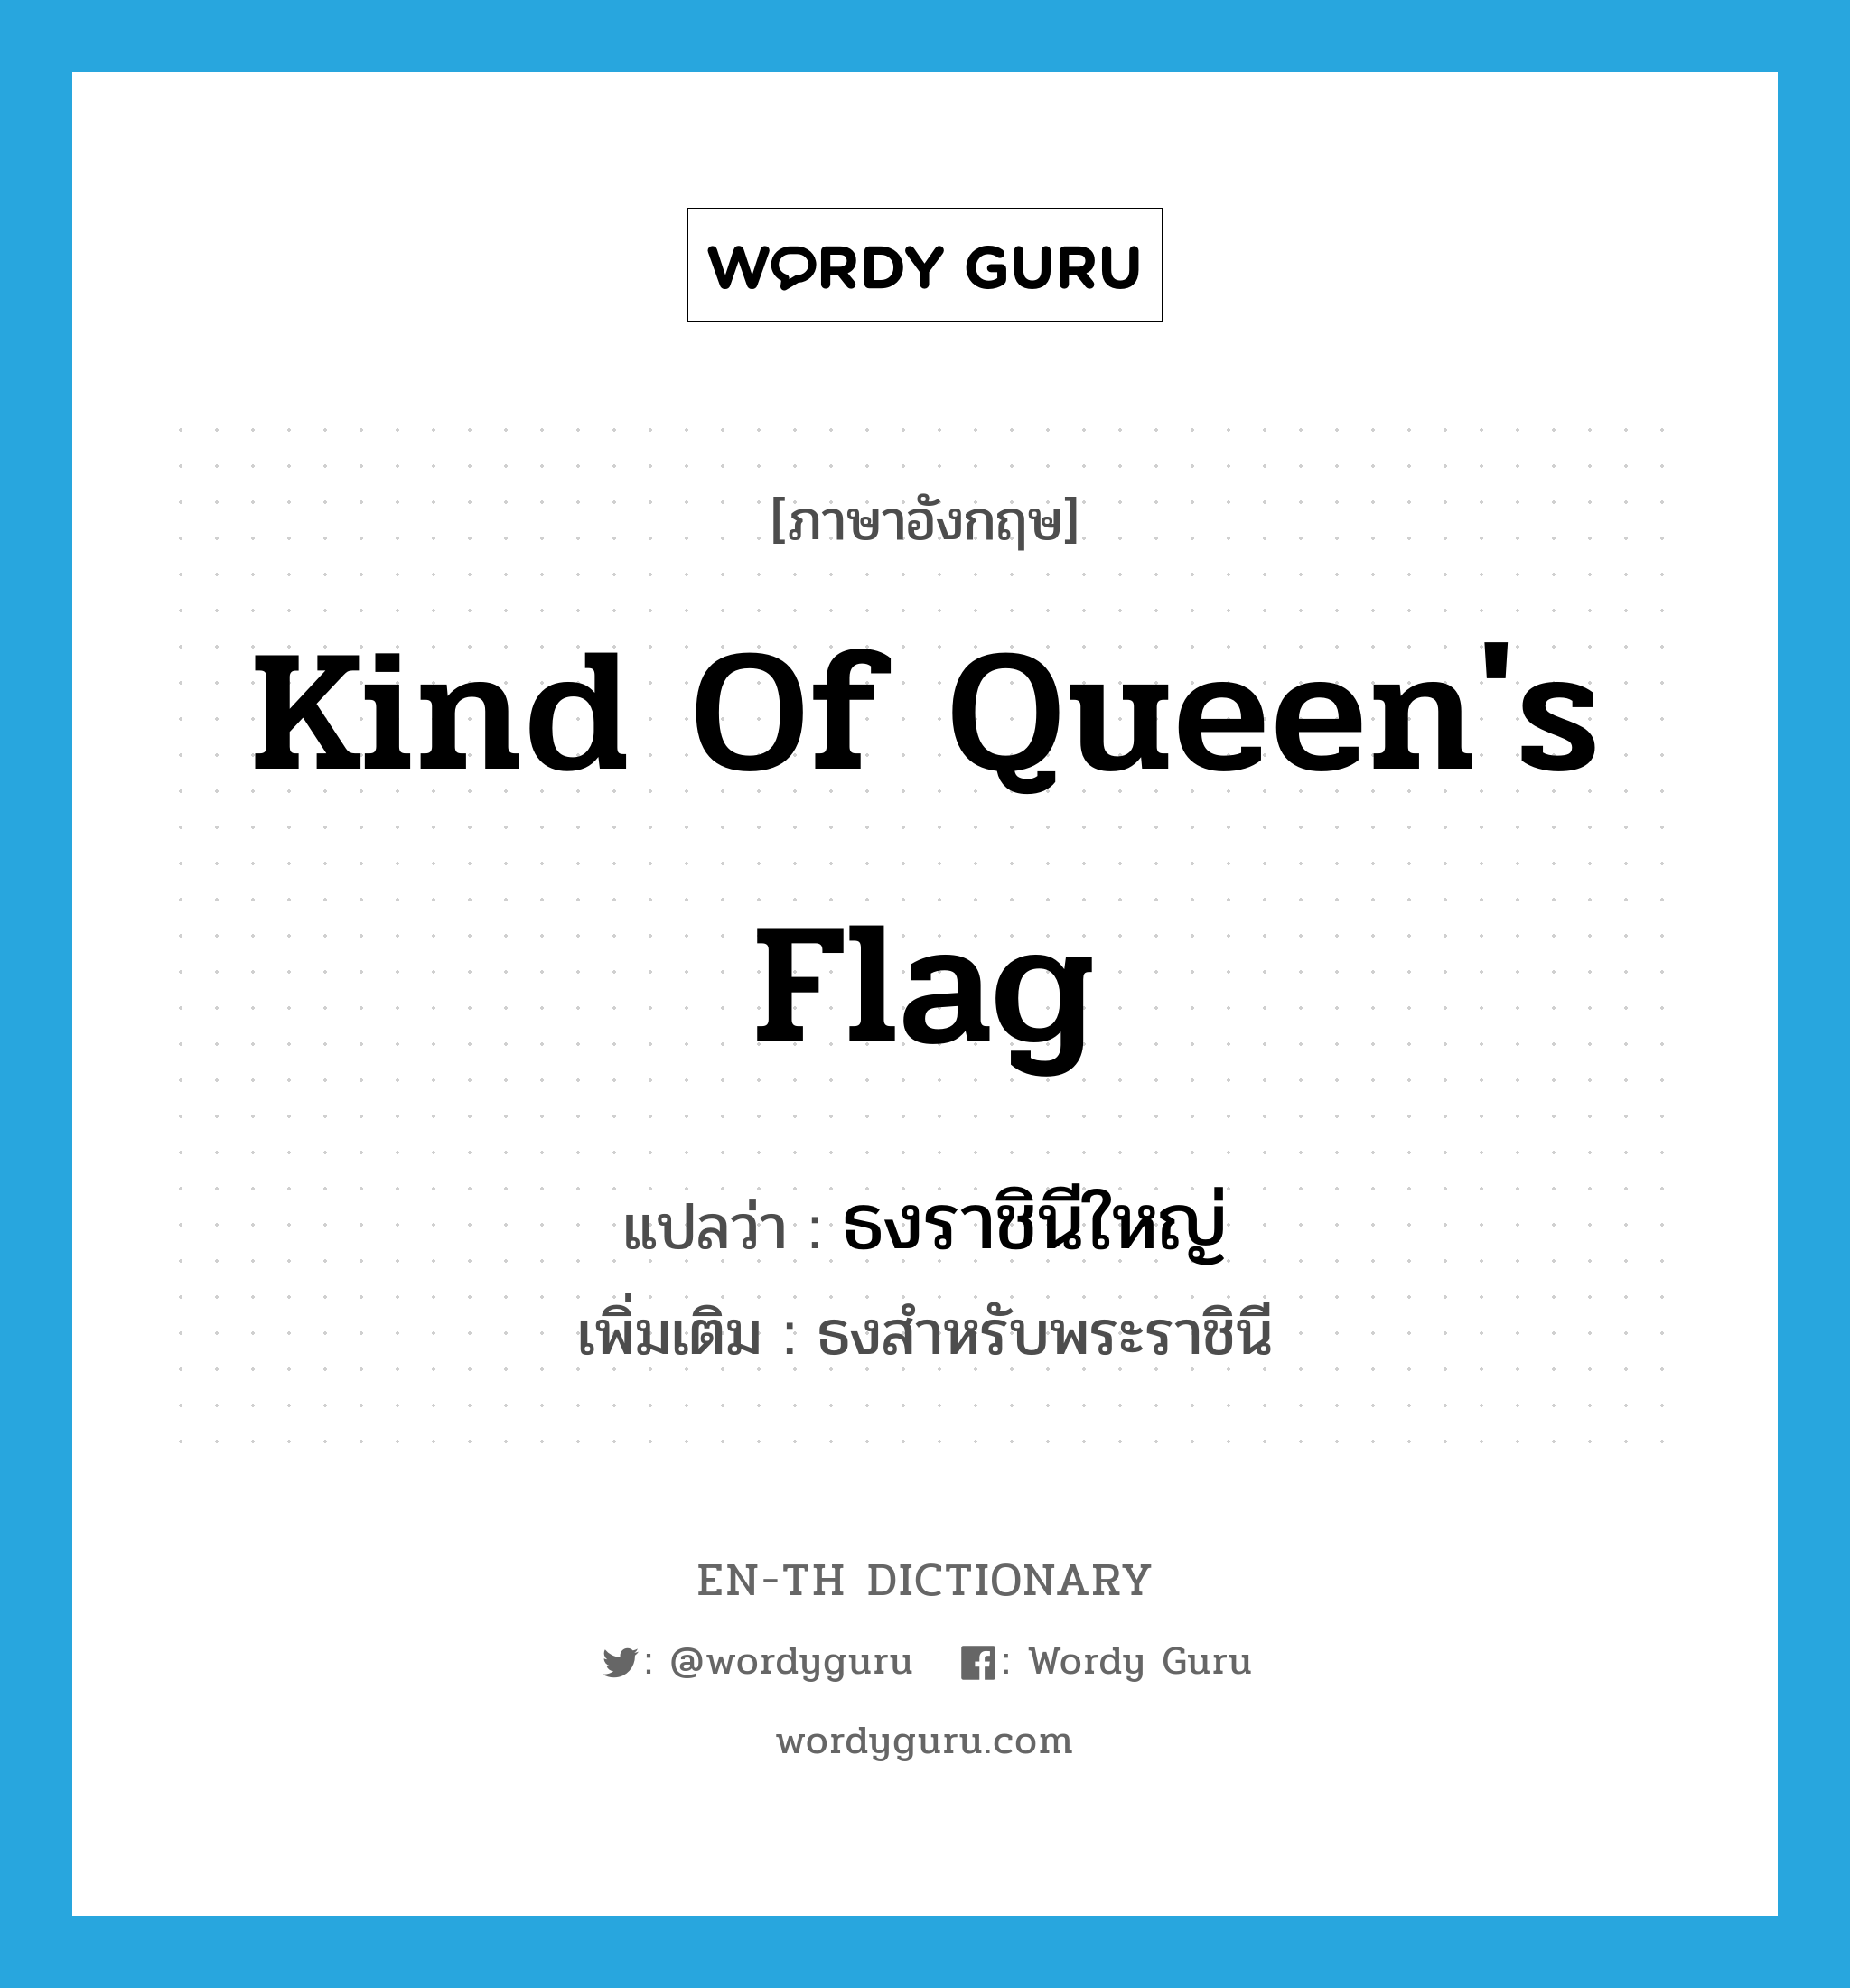 ธงราชินีใหญ่ ภาษาอังกฤษ?, คำศัพท์ภาษาอังกฤษ ธงราชินีใหญ่ แปลว่า kind of queen's flag ประเภท N เพิ่มเติม ธงสำหรับพระราชินี หมวด N